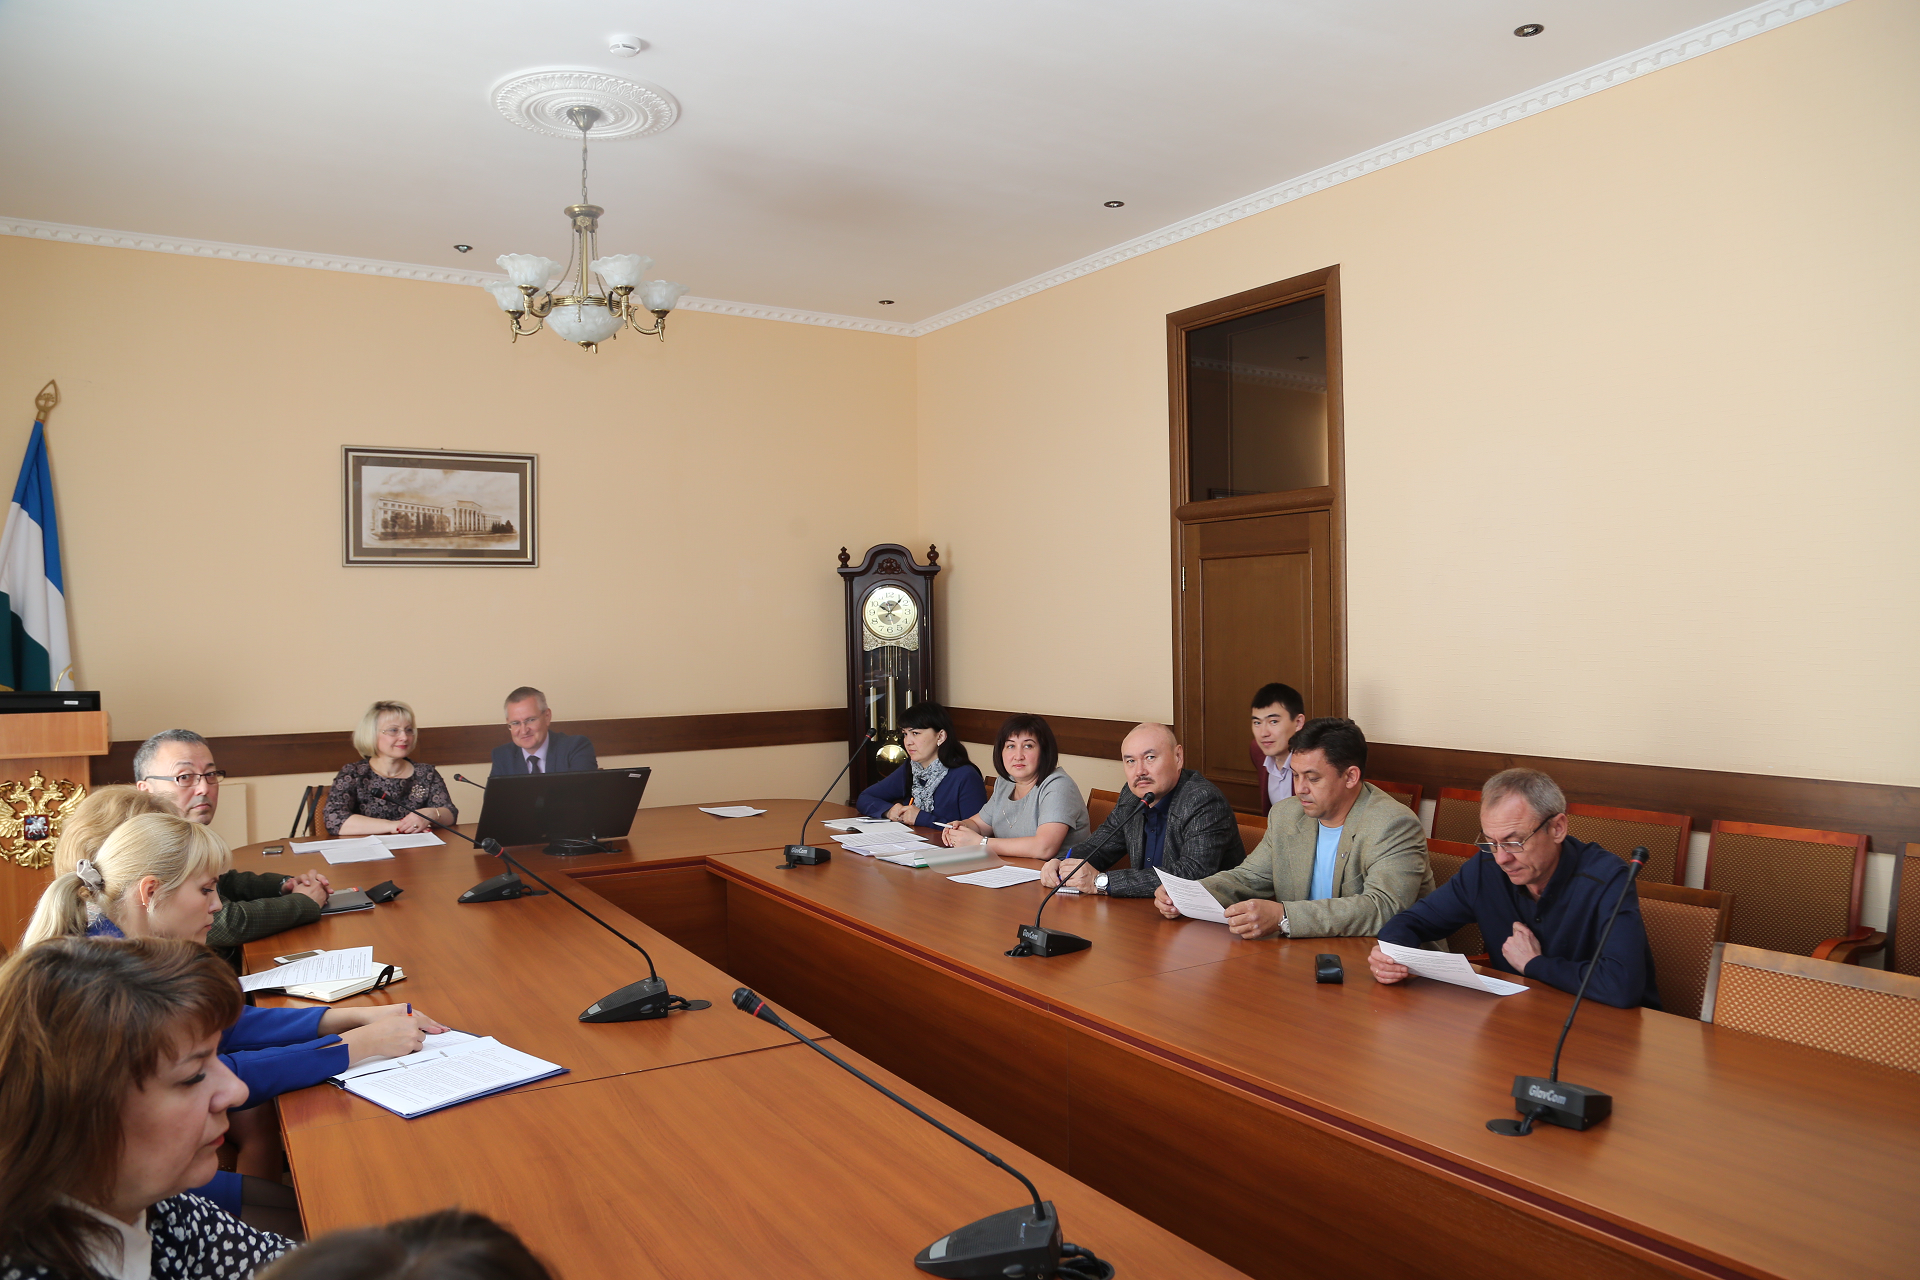 ВятГУ принял участие в работе региональной рабочей площадки по развитию инклюзивного высшего образования «Опыт инклюзивного высшего образования инвалидов в Республике Башкортостан»